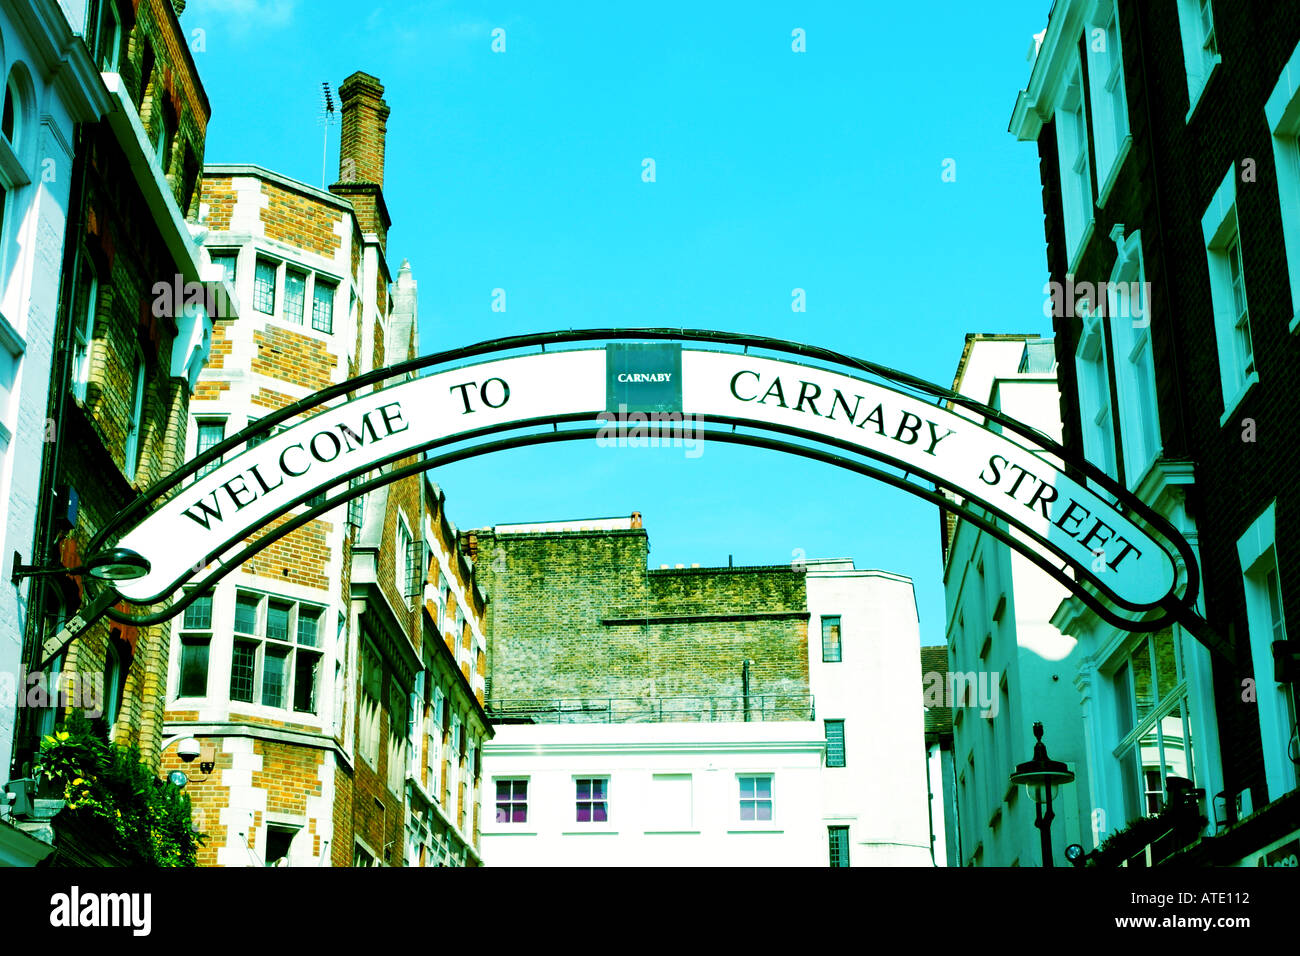 L'arche au-dessus de l'entrée de Carnaby Street à Londres Banque D'Images